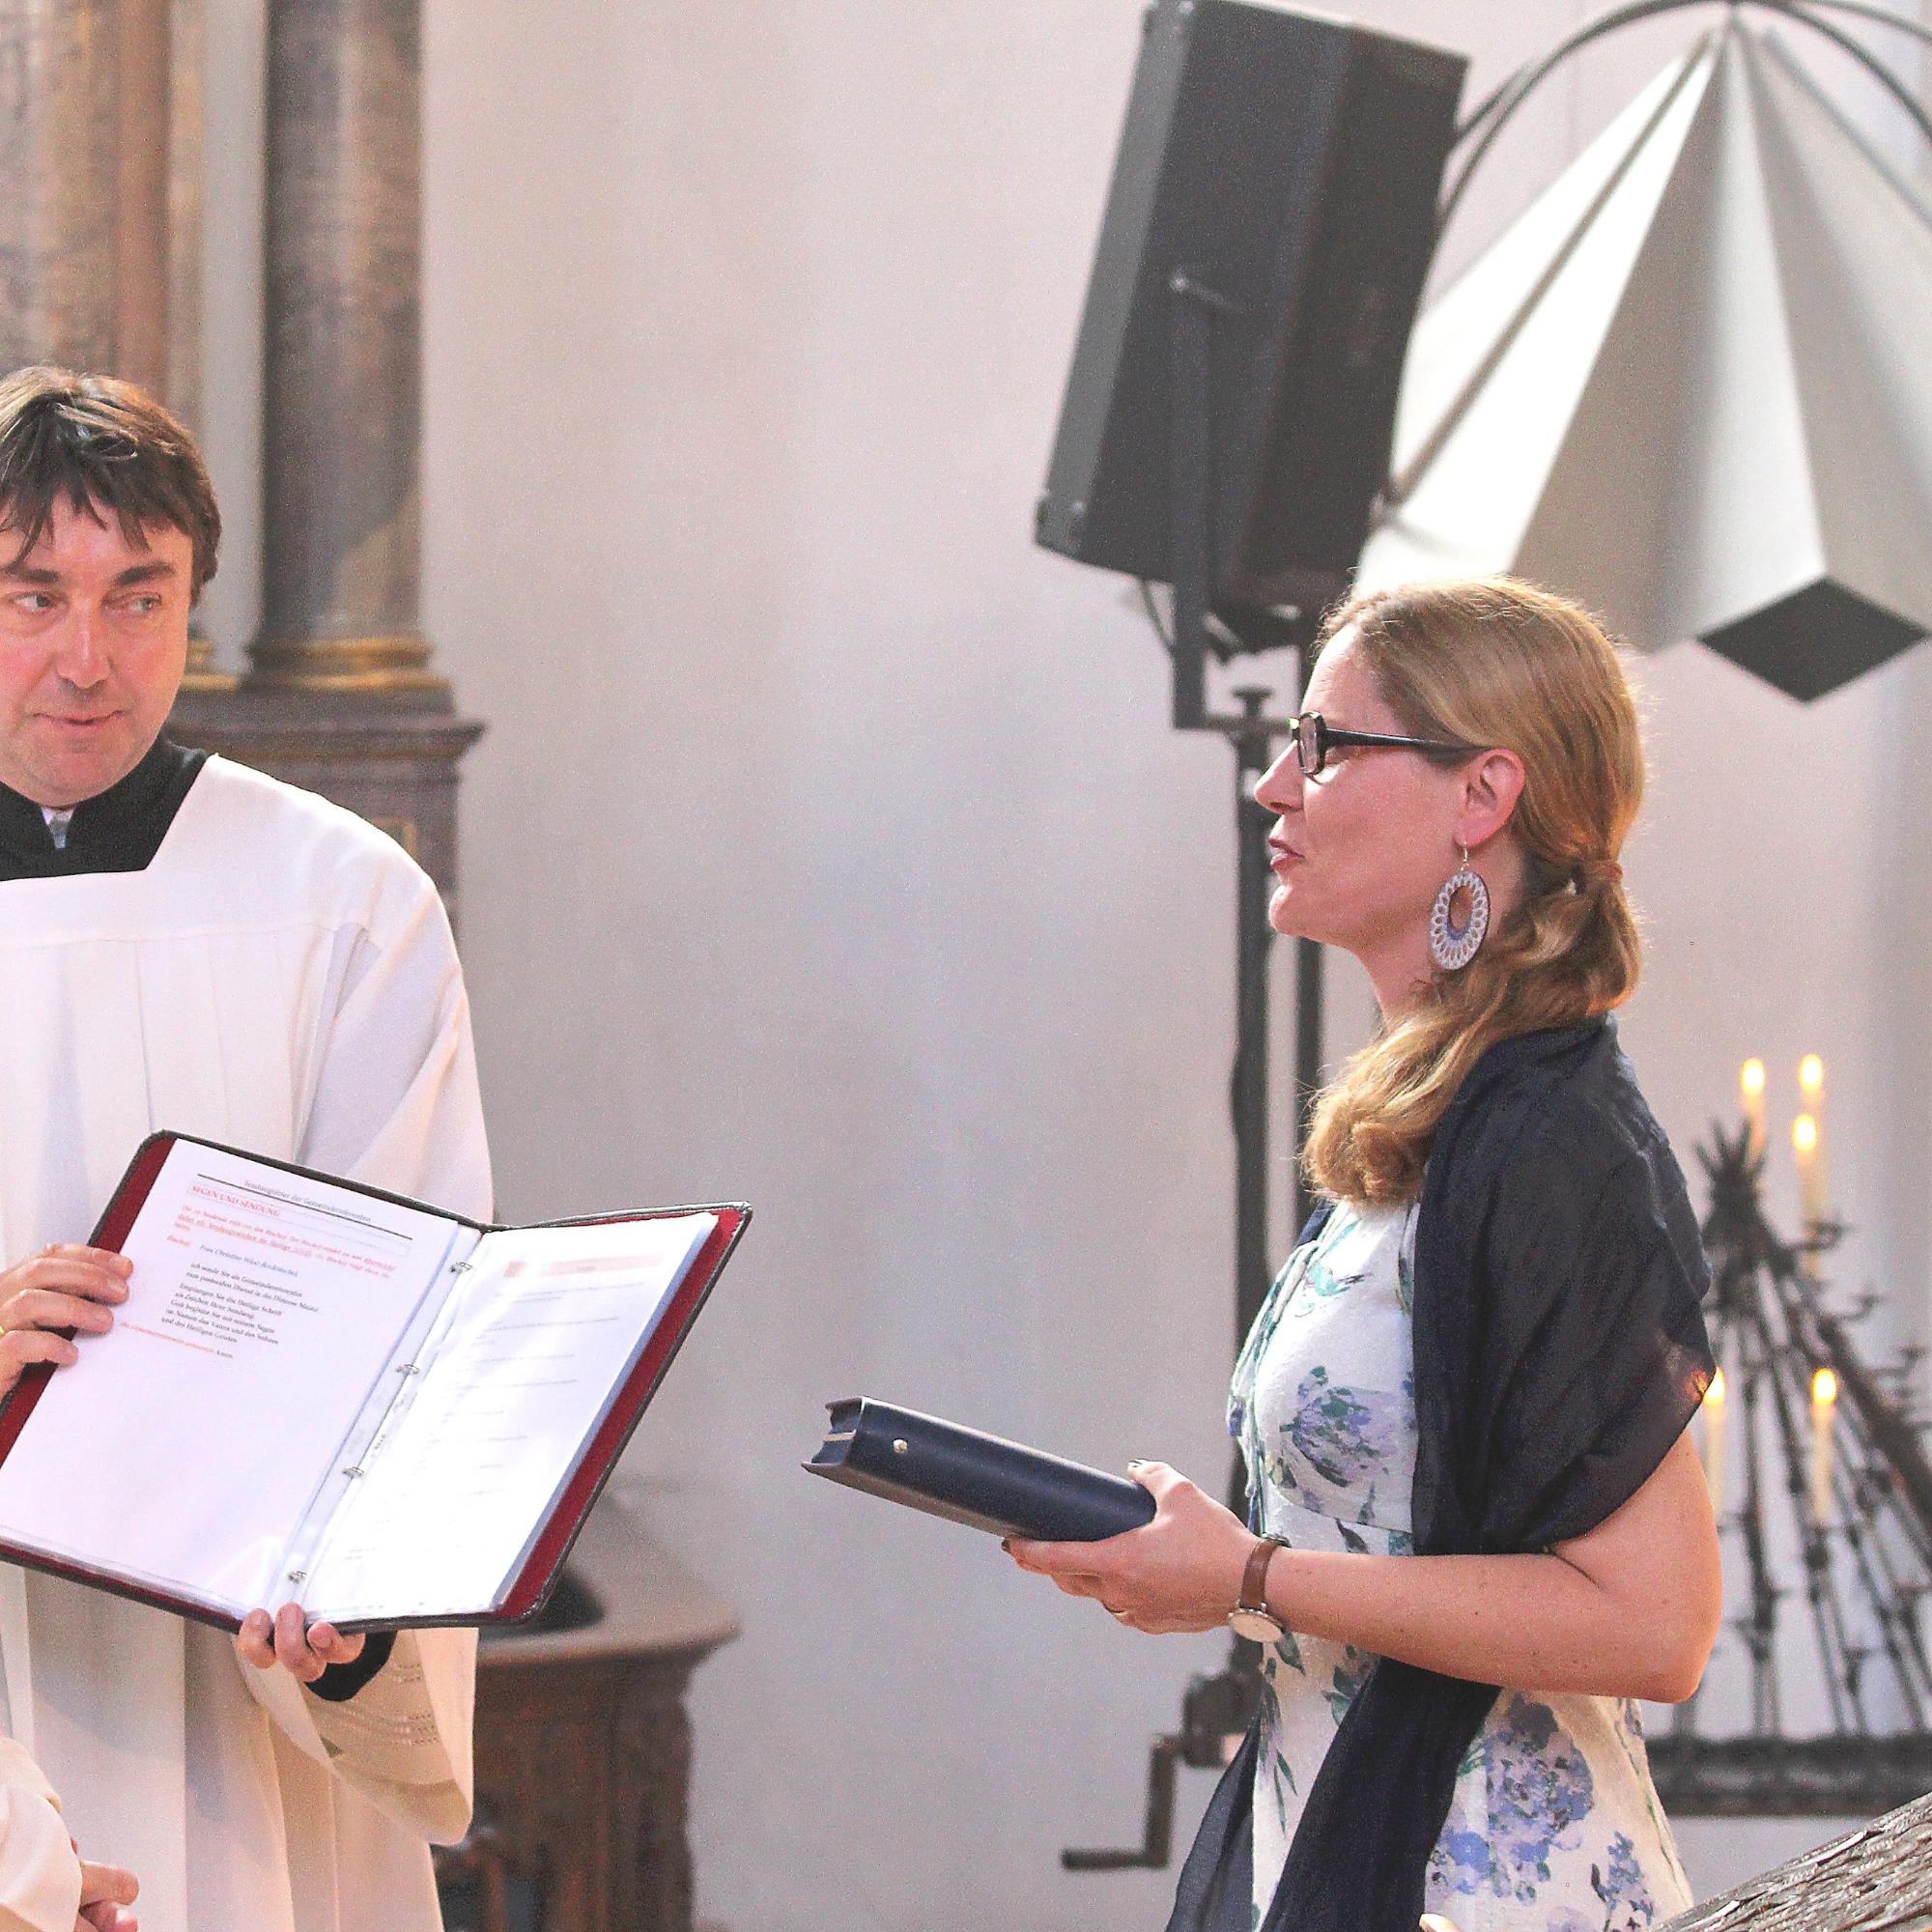 Mainz, 15. Juni 2019: Als Zeichen ihrer Sendung erhielt Christine Wüst-Rocktäschel von Bischof Peter Kohlgraf eine Heilige Schrift.